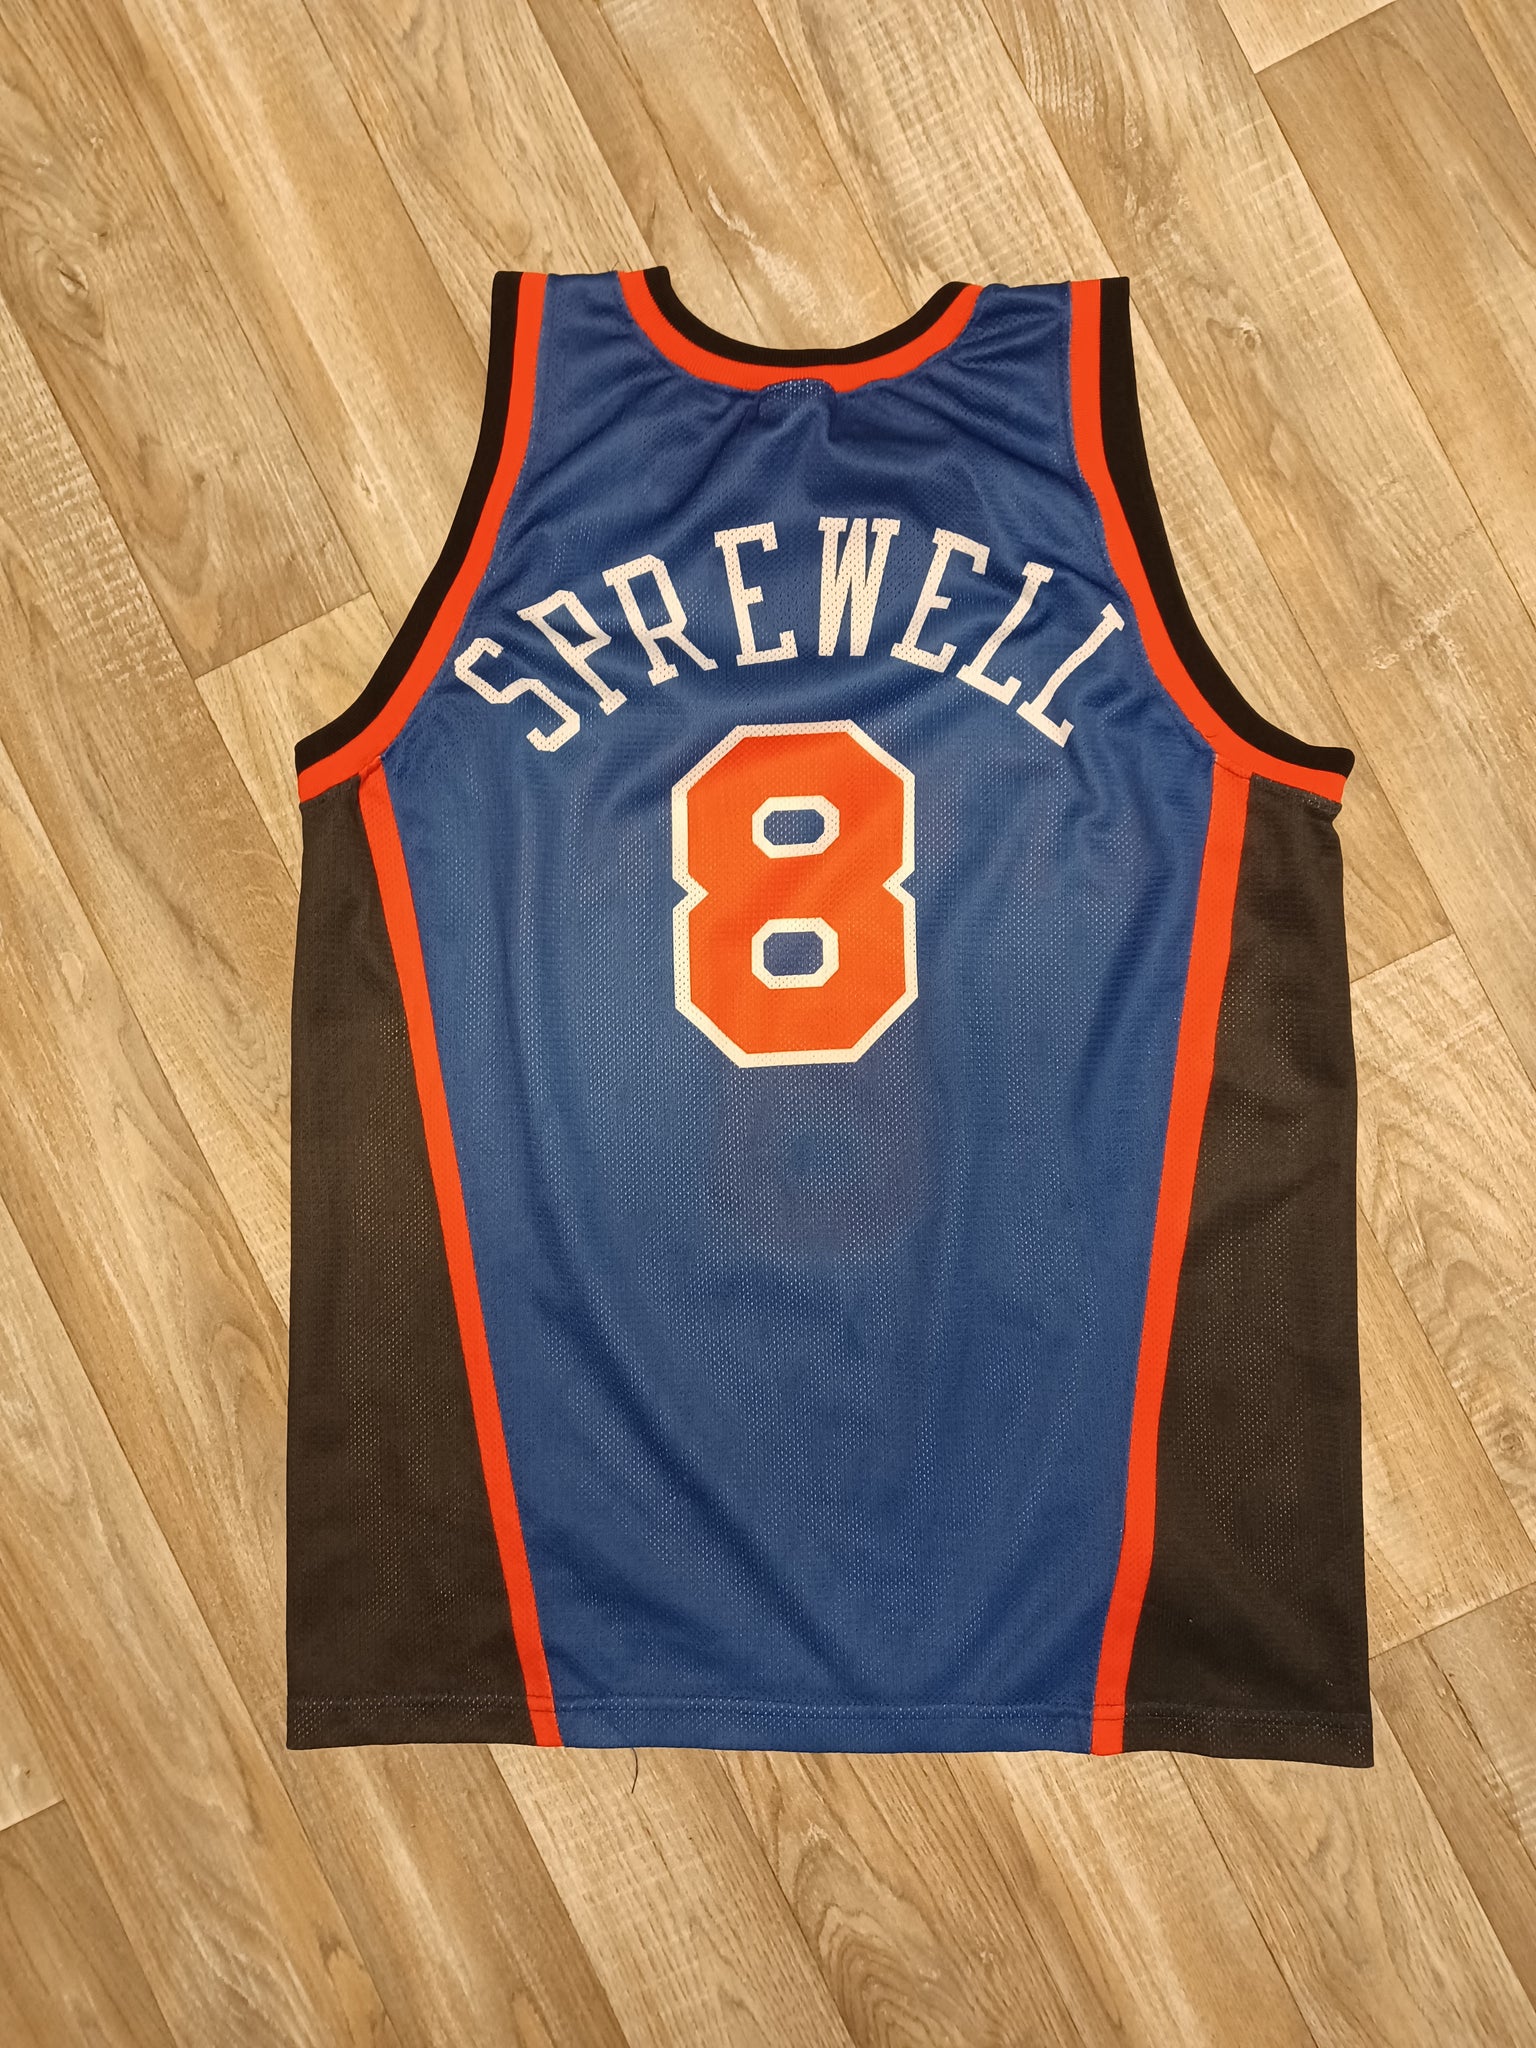 Official Latrell Sprewell New York Knicks Jerseys, Knicks City Jersey,  Latrell Sprewell Knicks Basketball Jerseys